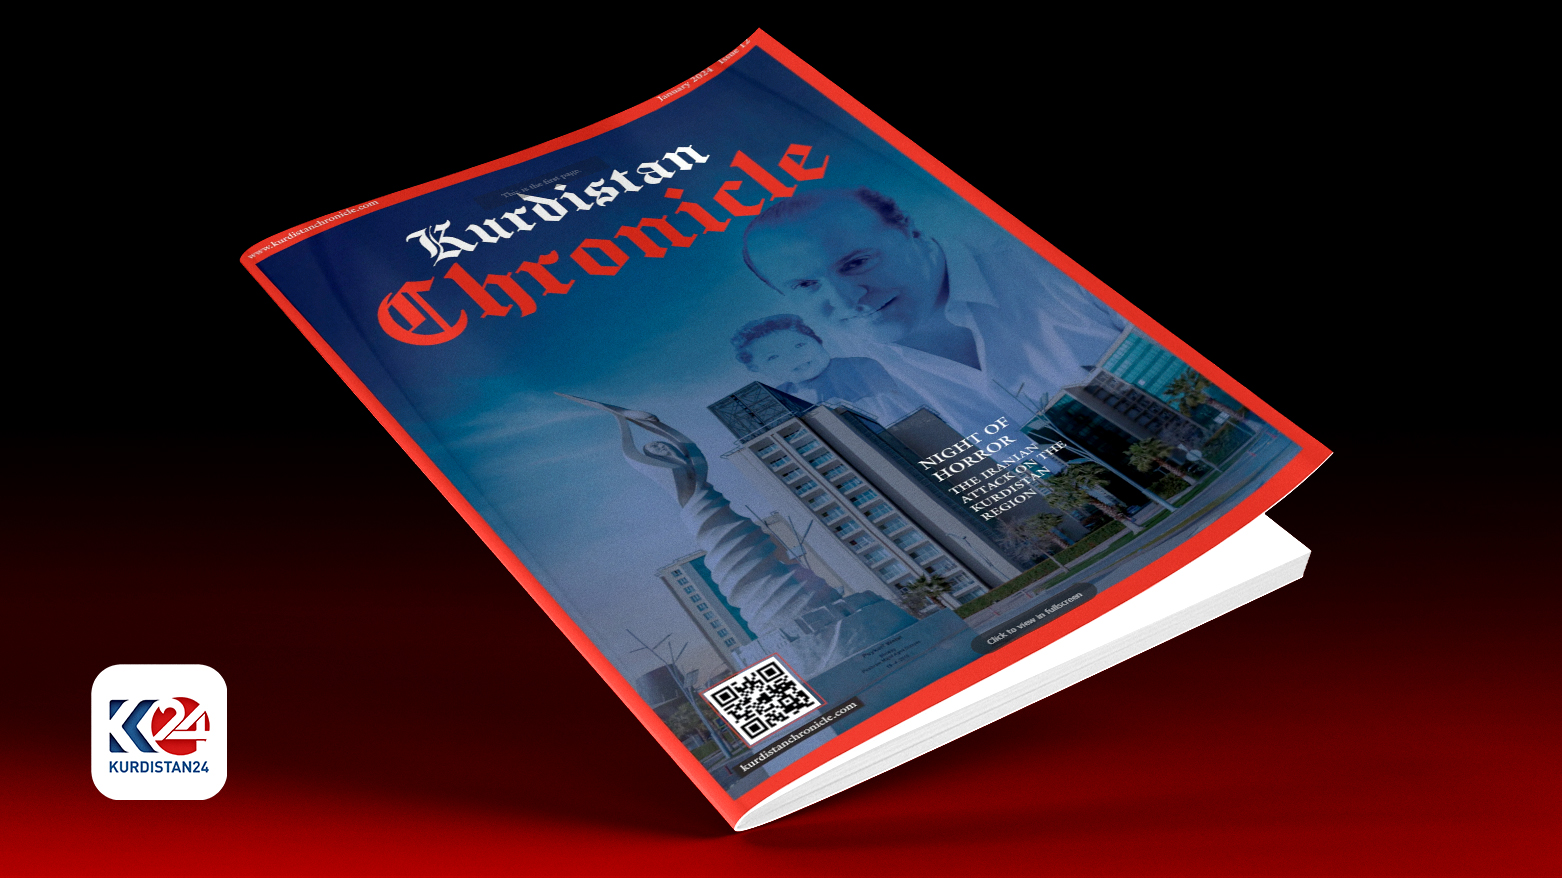 Kurdistan Chronicle magazine features Iranian attack on Kurdistan Region